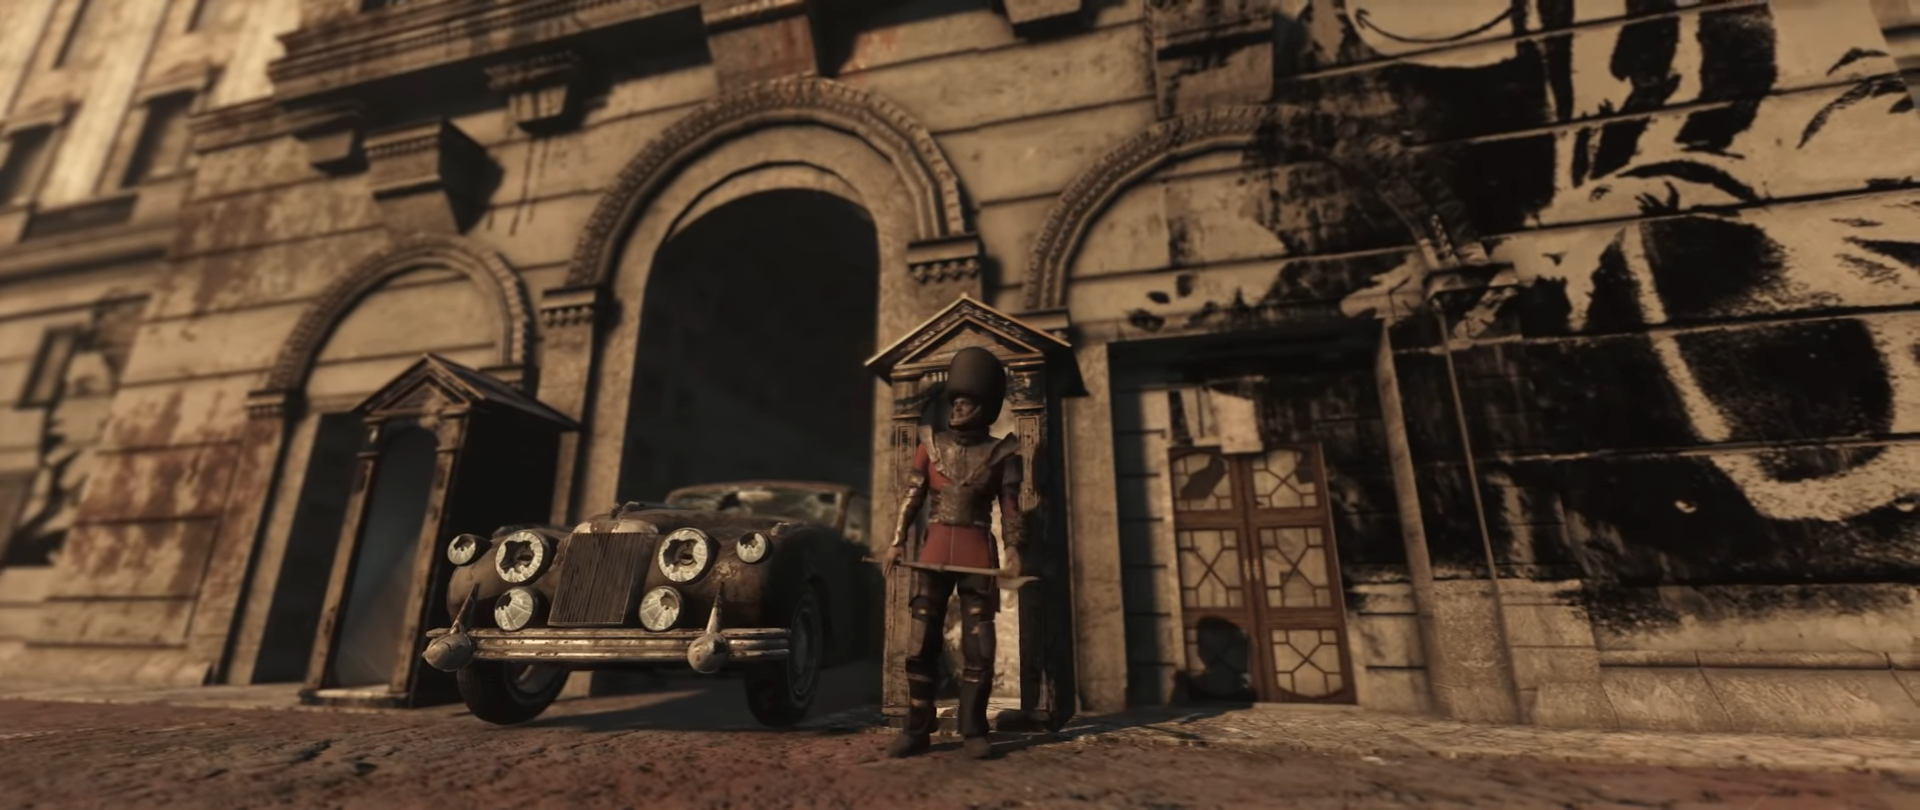 Bilder zu So sieht London in Fallout 4 aus - Mod-Team arbeitet an riesigem Projekt